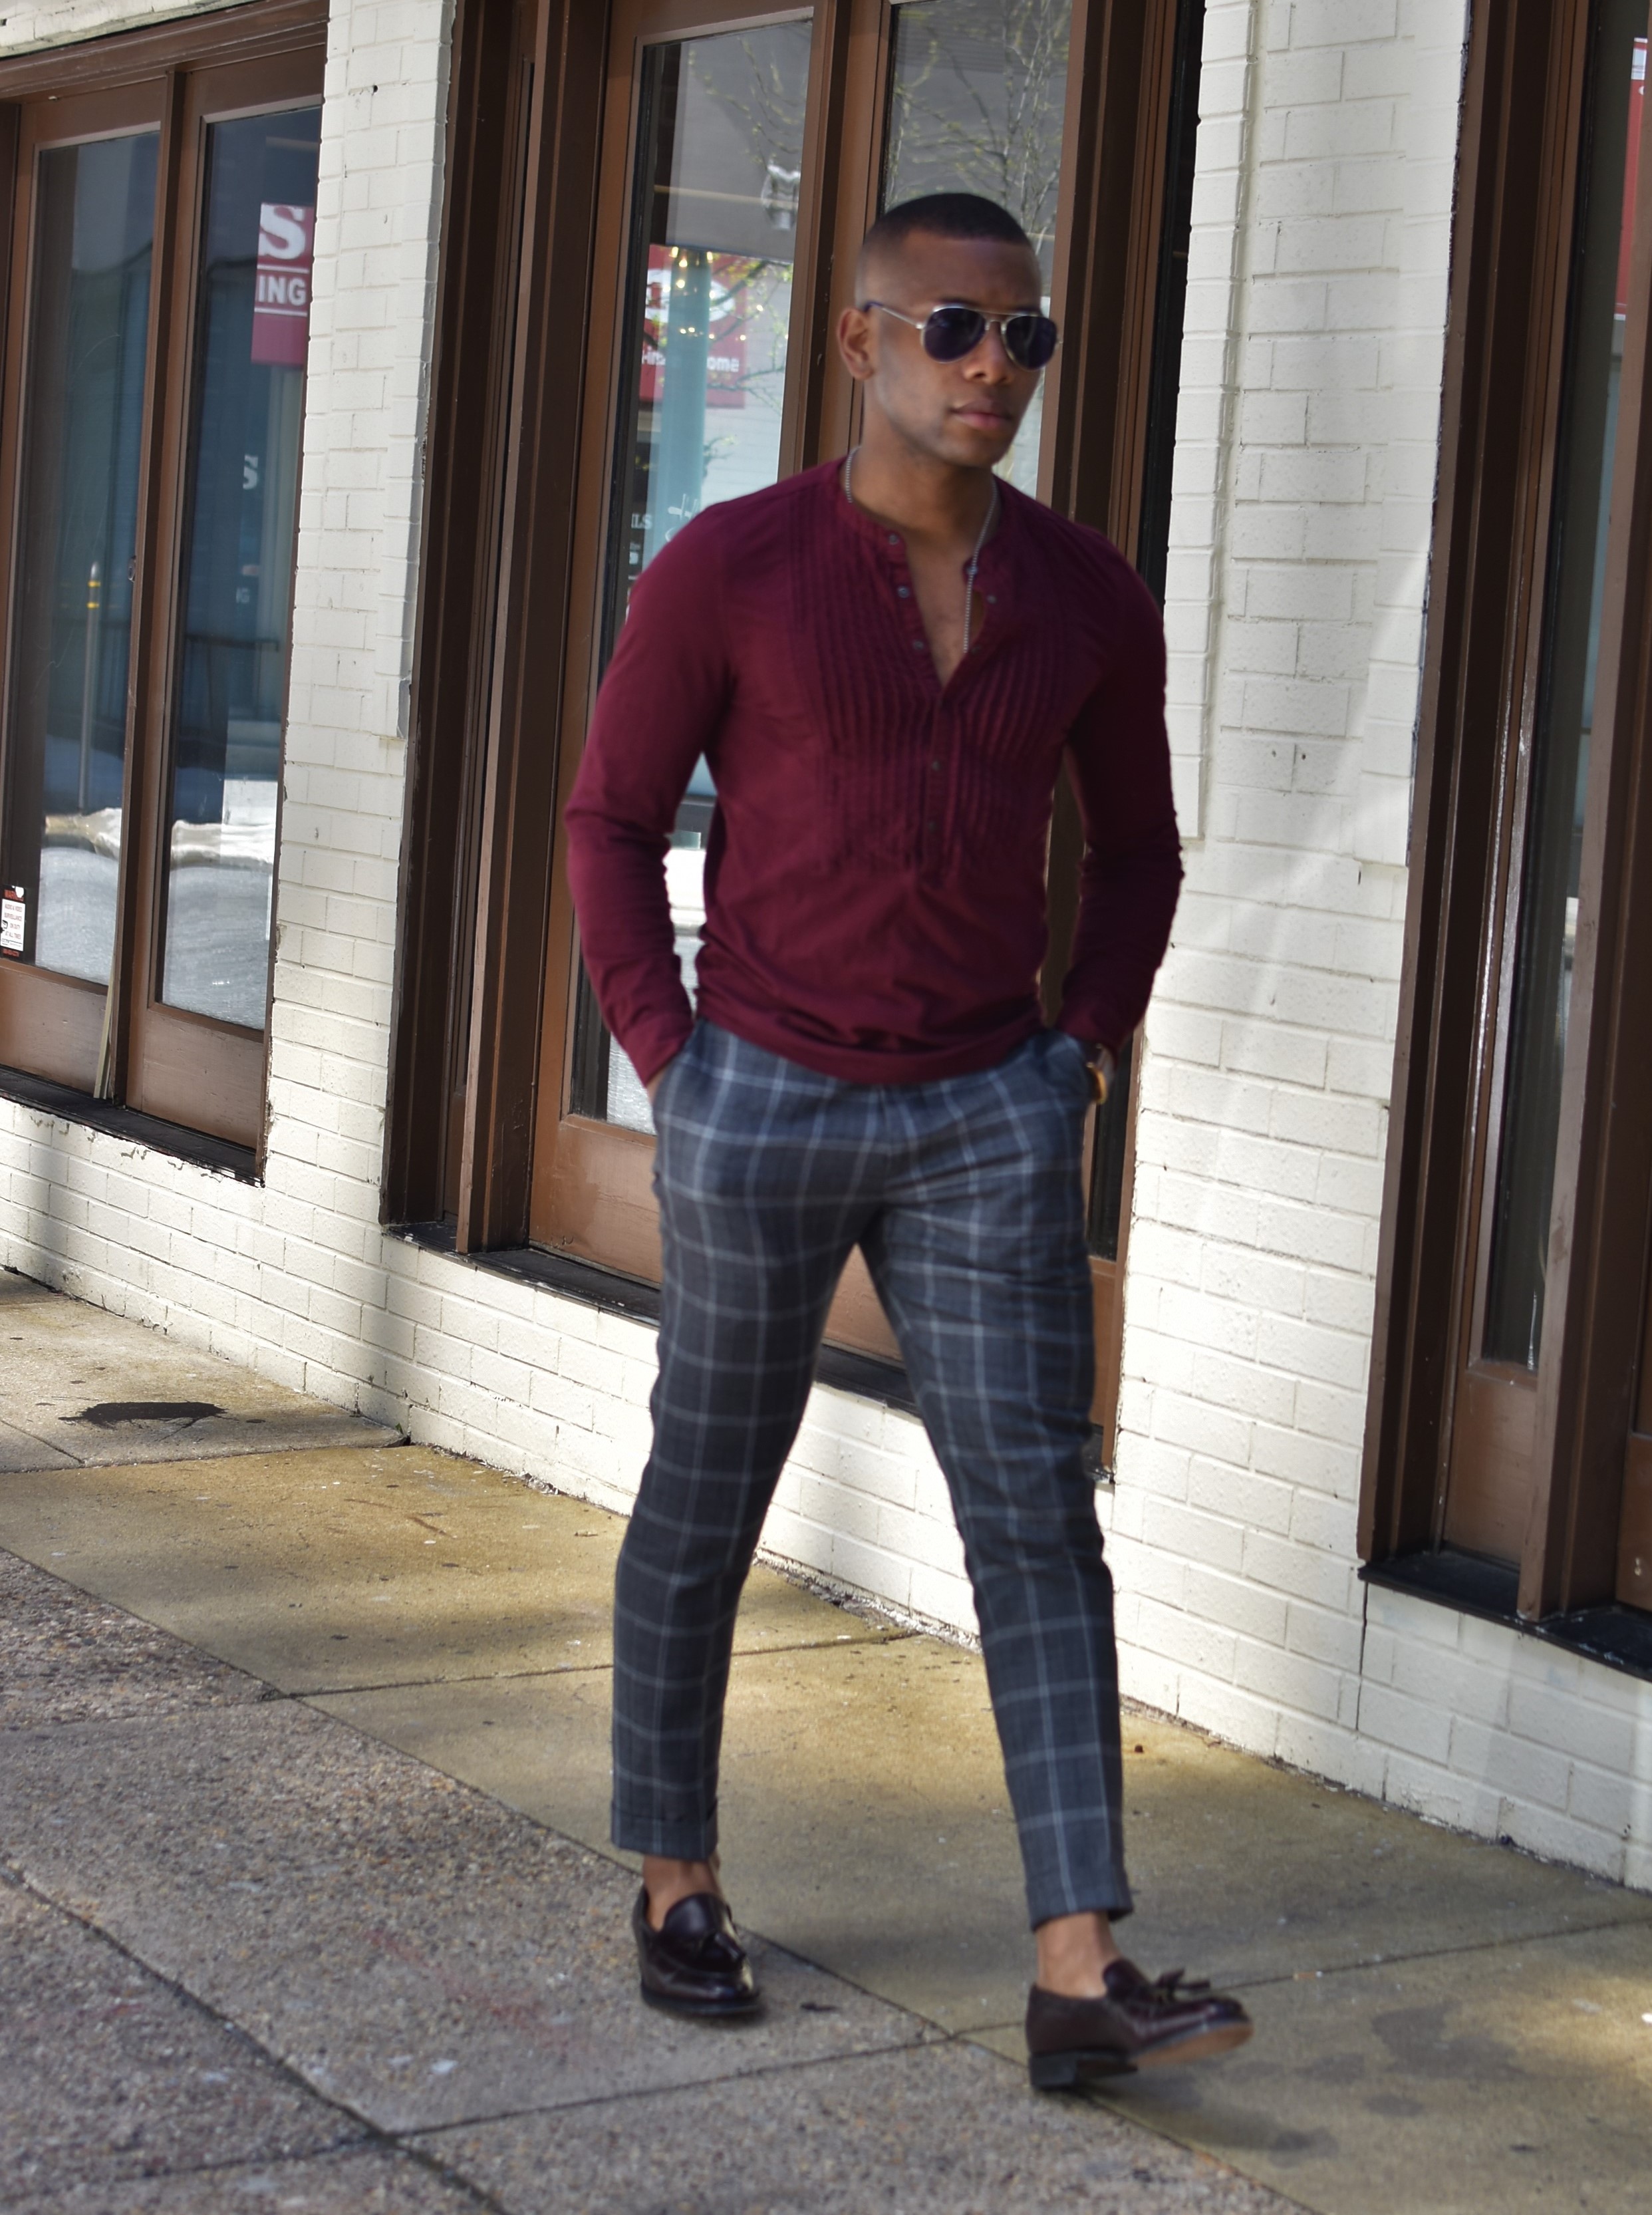 Sabir M. Peele Men's Style Pro in Grey Plaid Tailor 4 Less Suit